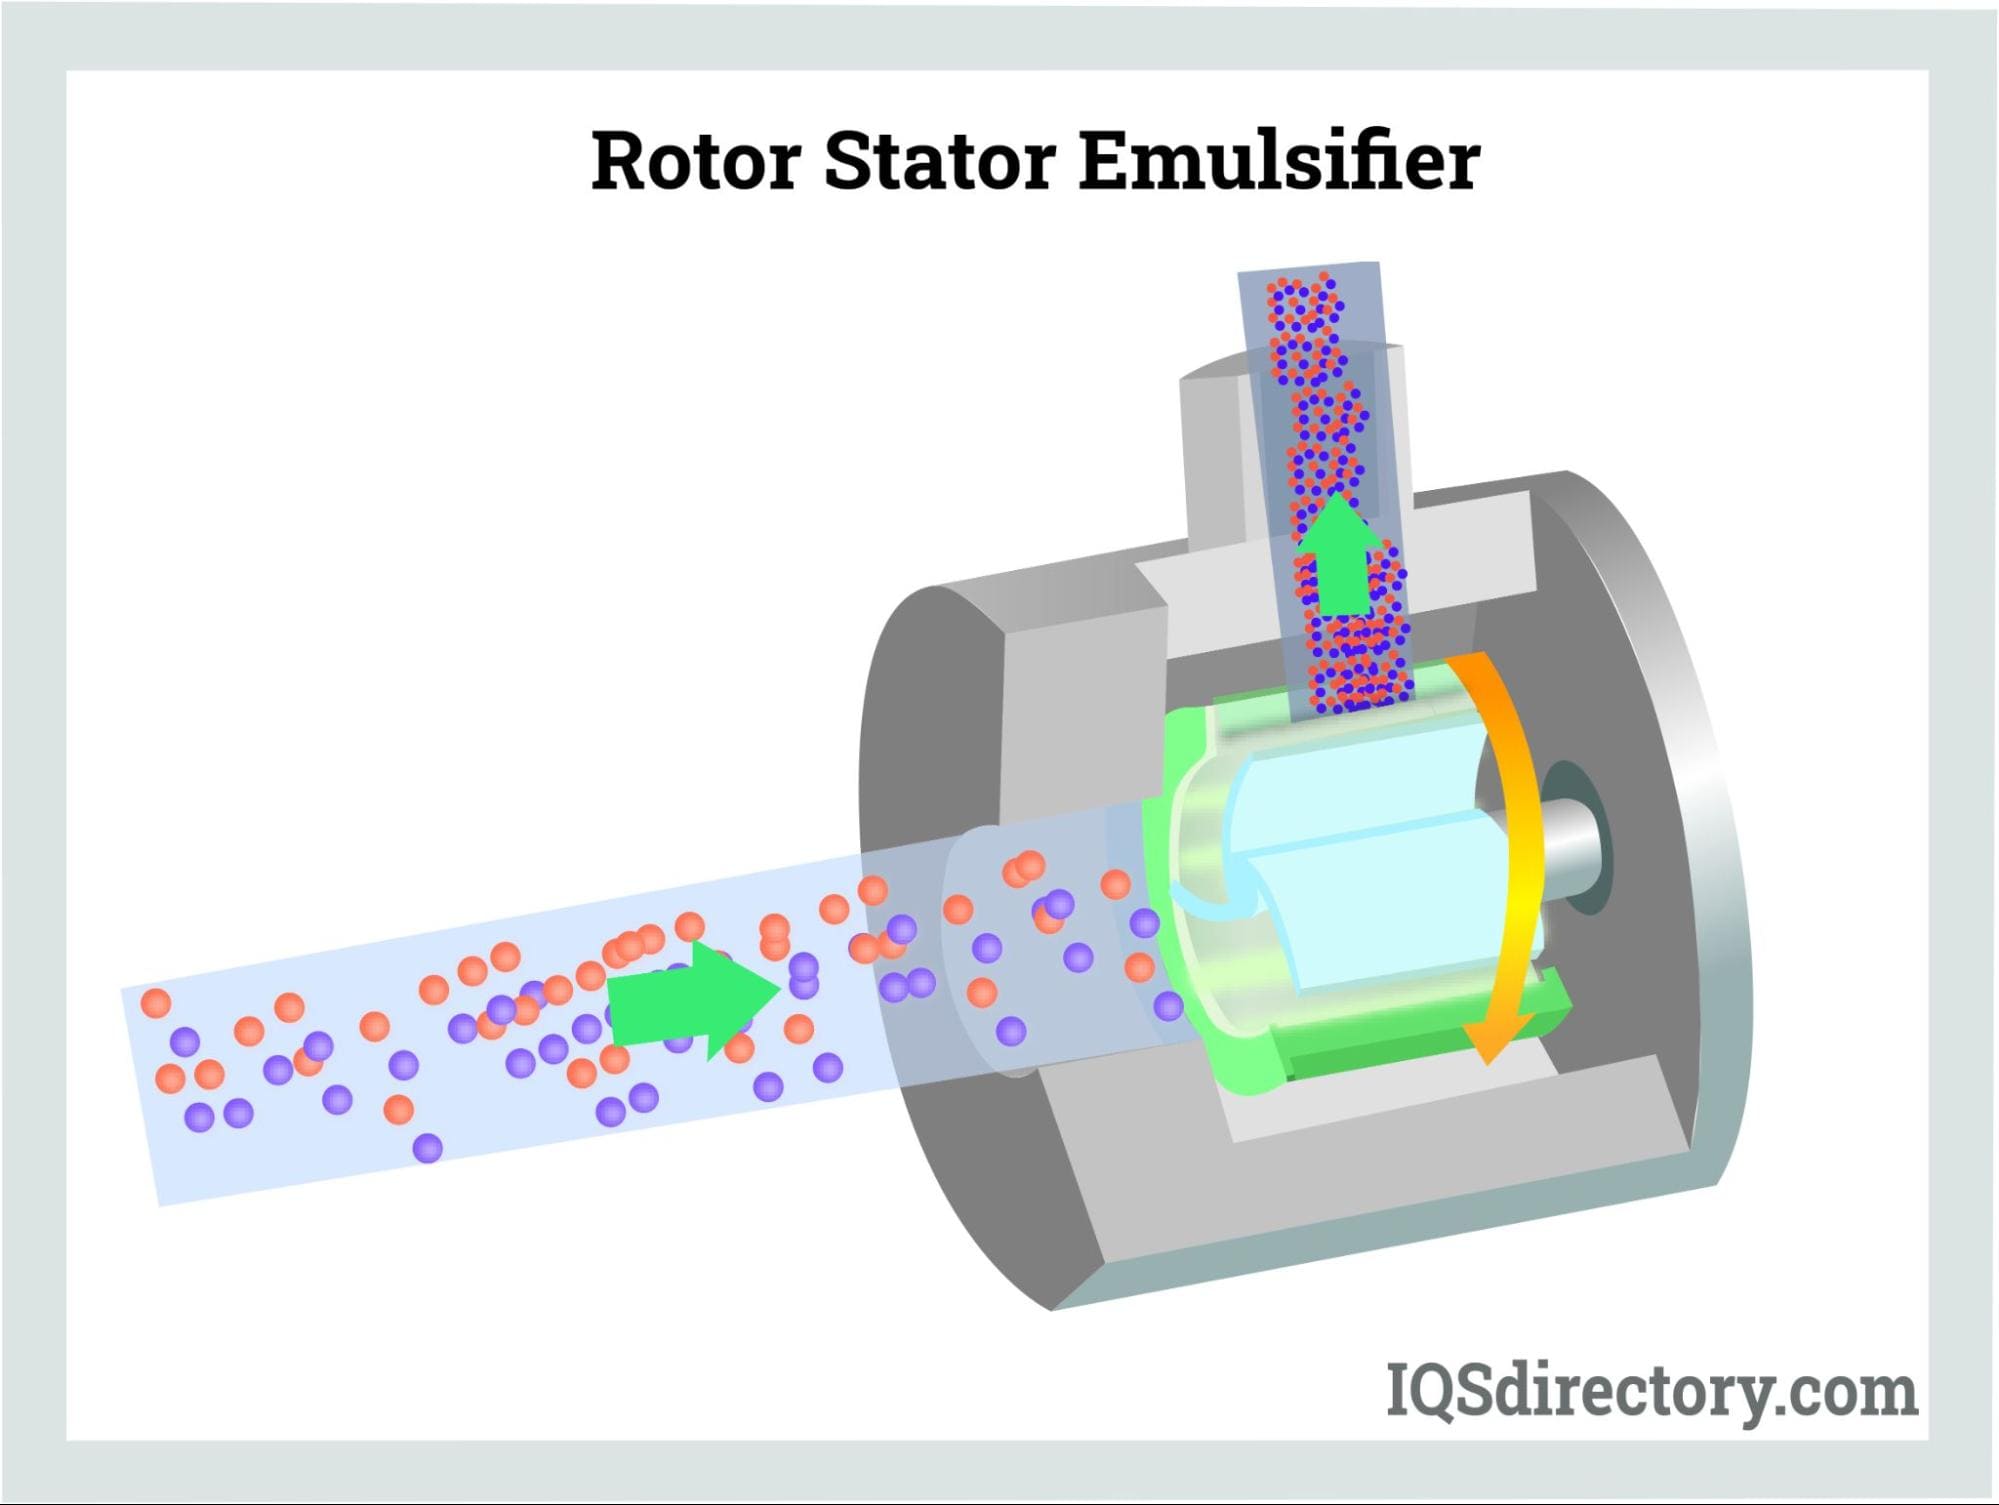 Rotor Stator Emulsifier